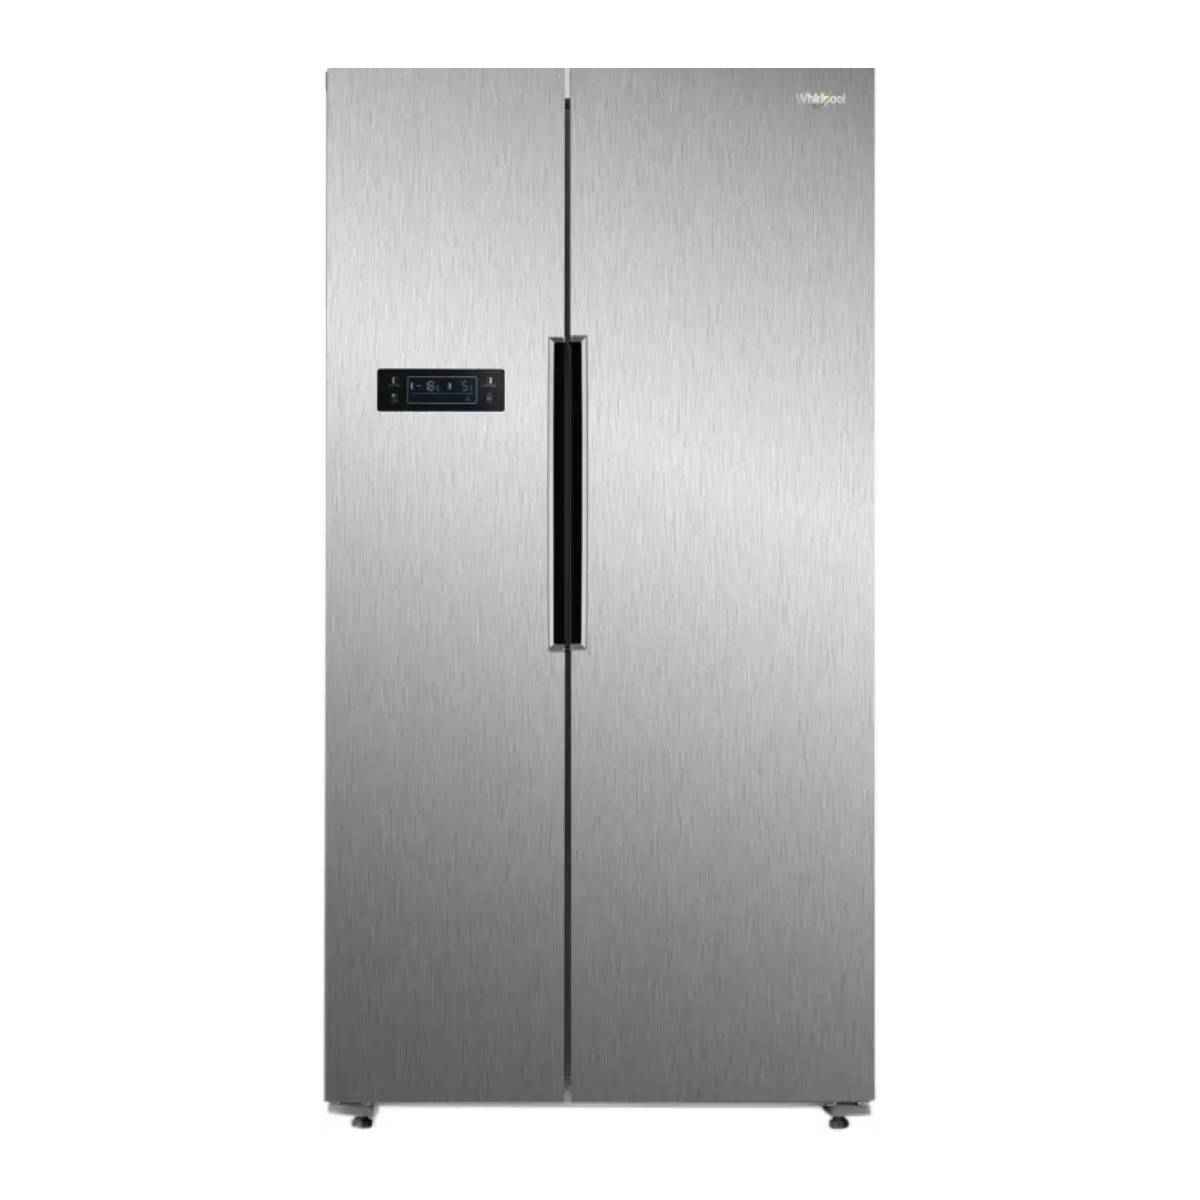 Whirlpool 570 L Side by Side Refrigerator (WS SBS 570 STEEL (SH))